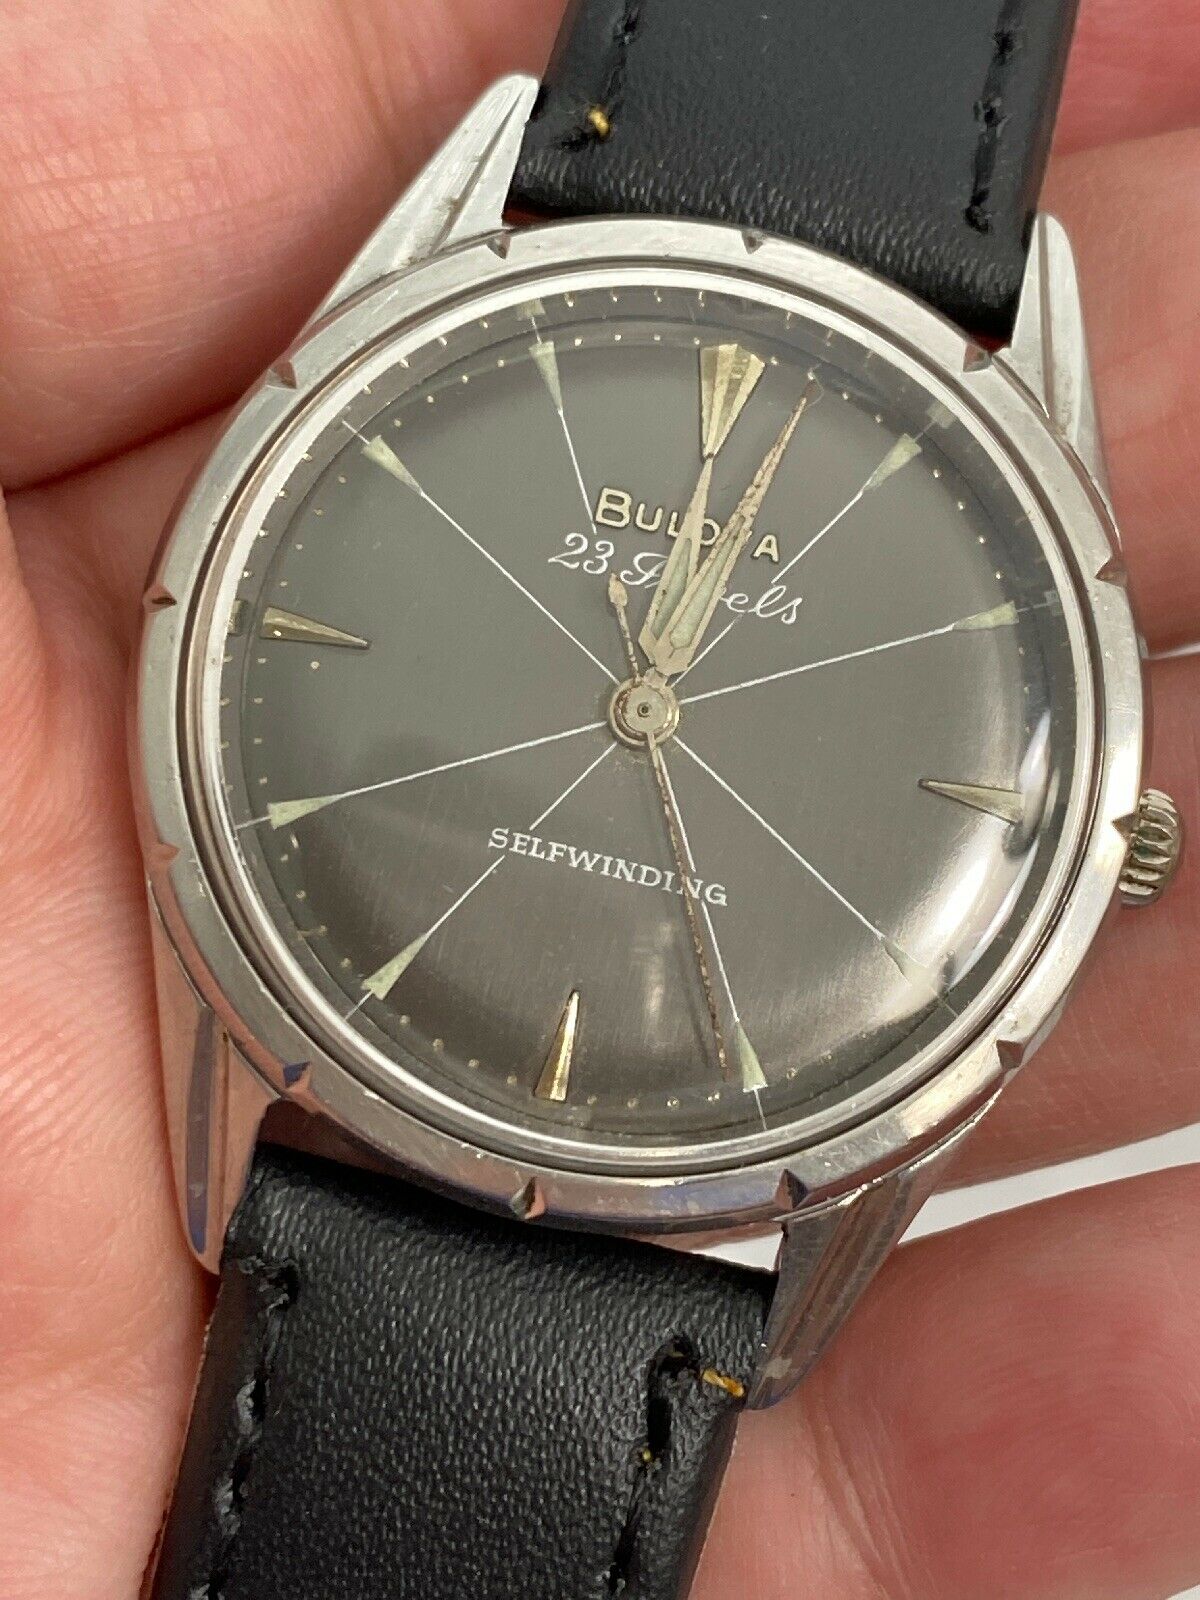 1963 Bulova Ragatta 23 Jewels Self-winding Black Dial Watch